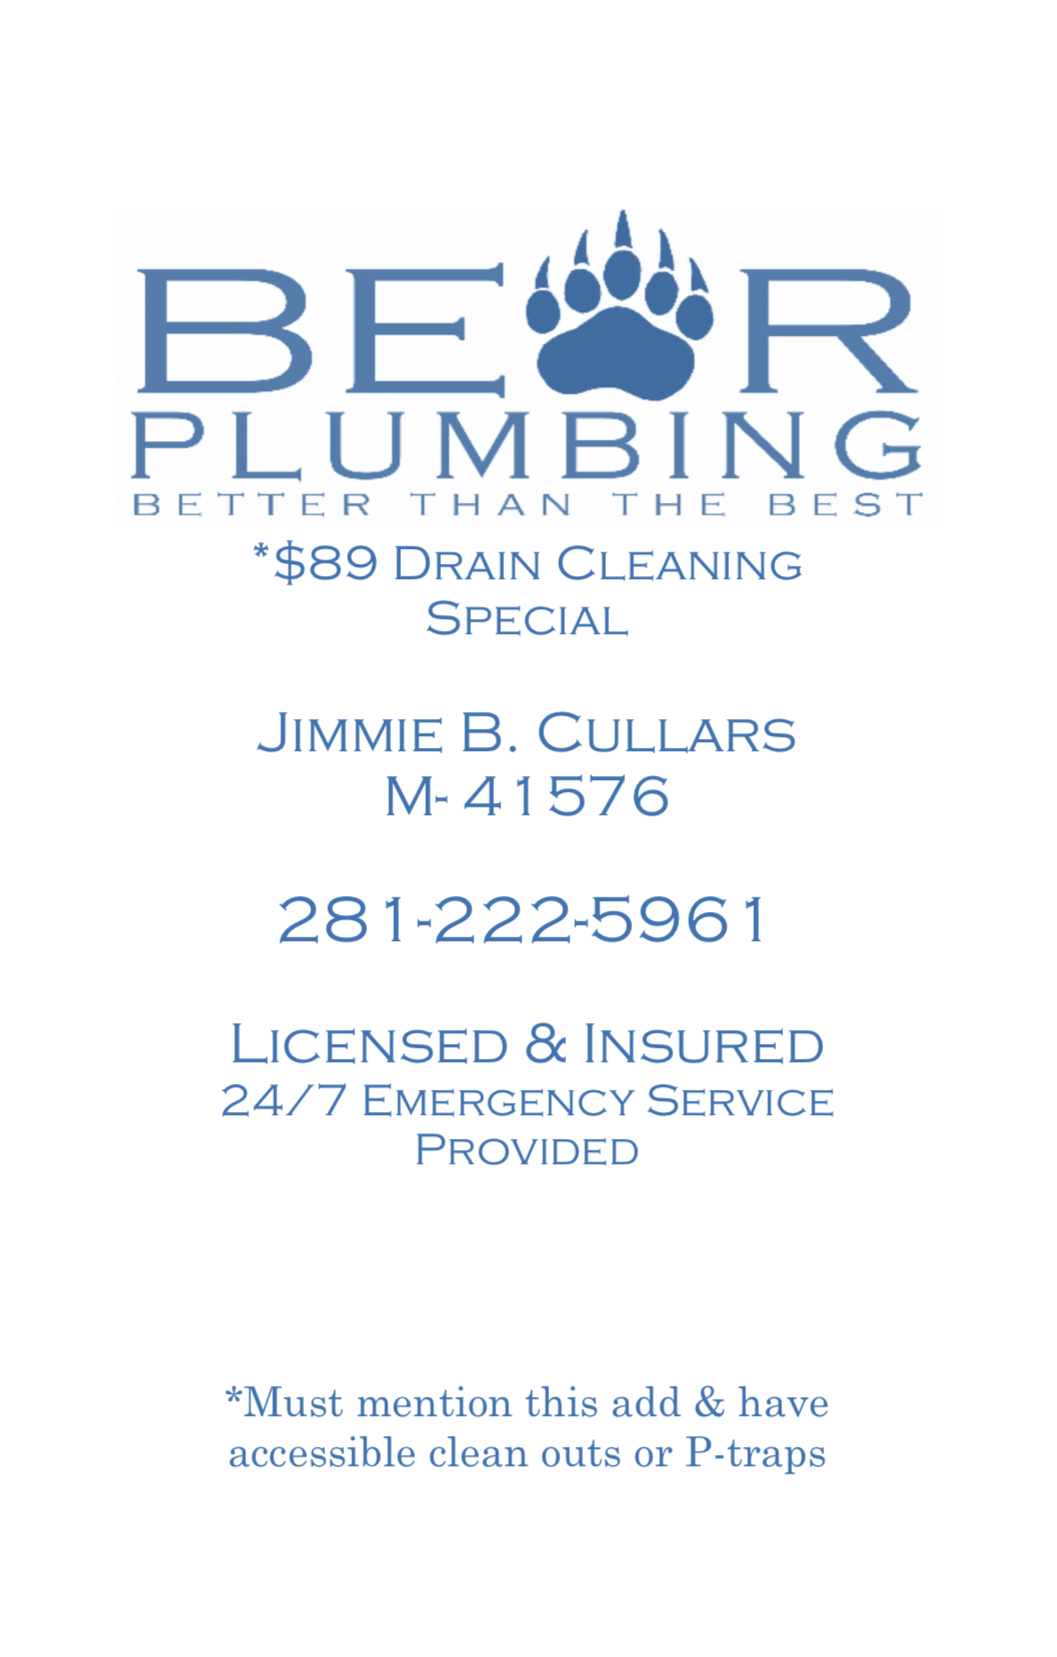 Bear Plumbing Logo and Flyer